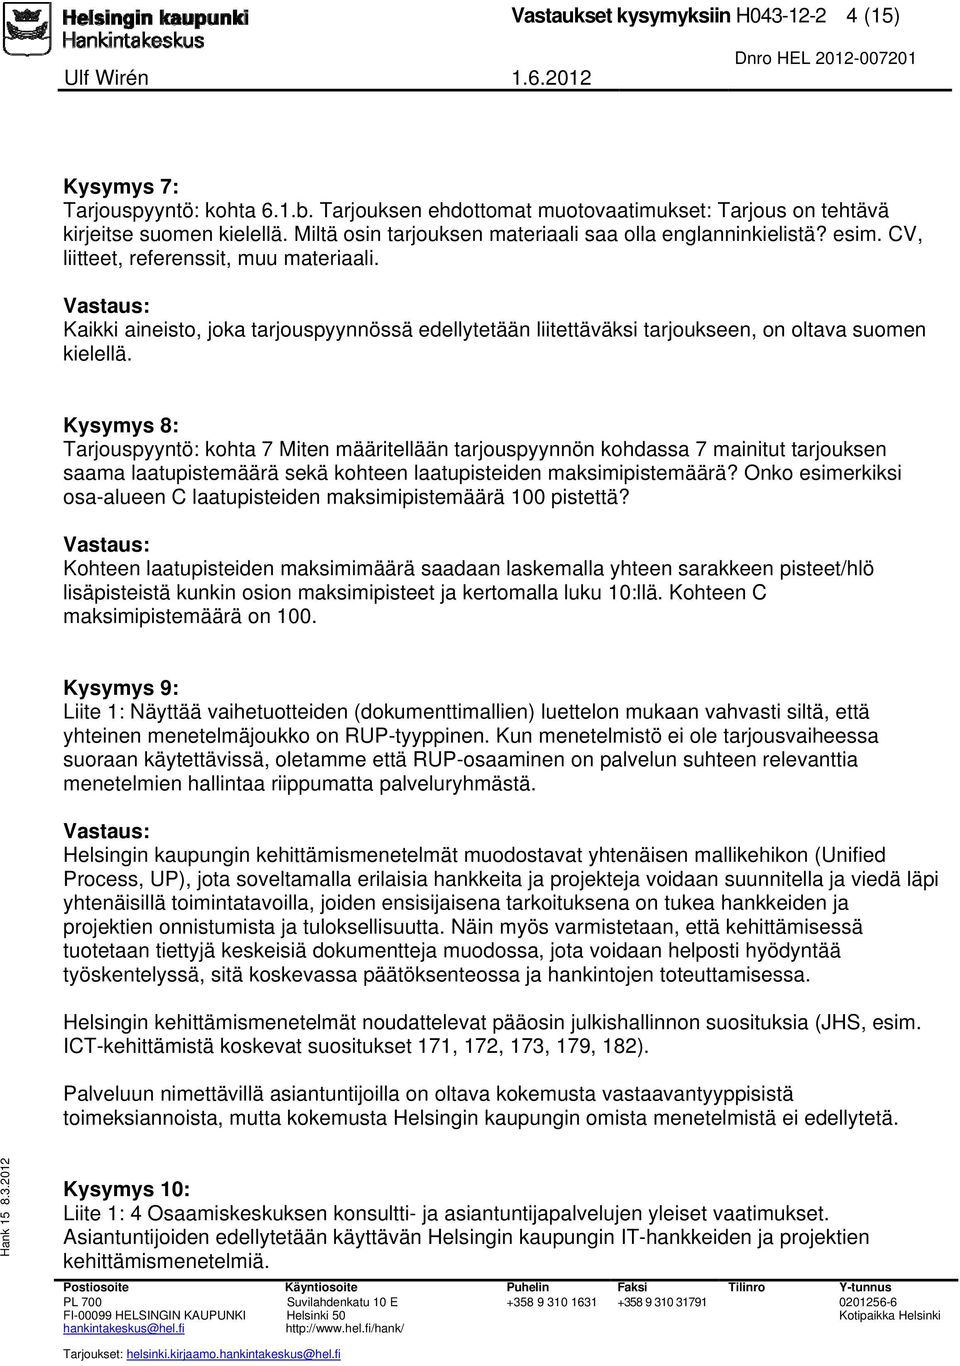 Kaikki aineisto, joka tarjouspyynnössä edellytetään liitettäväksi tarjoukseen, on oltava suomen kielellä.